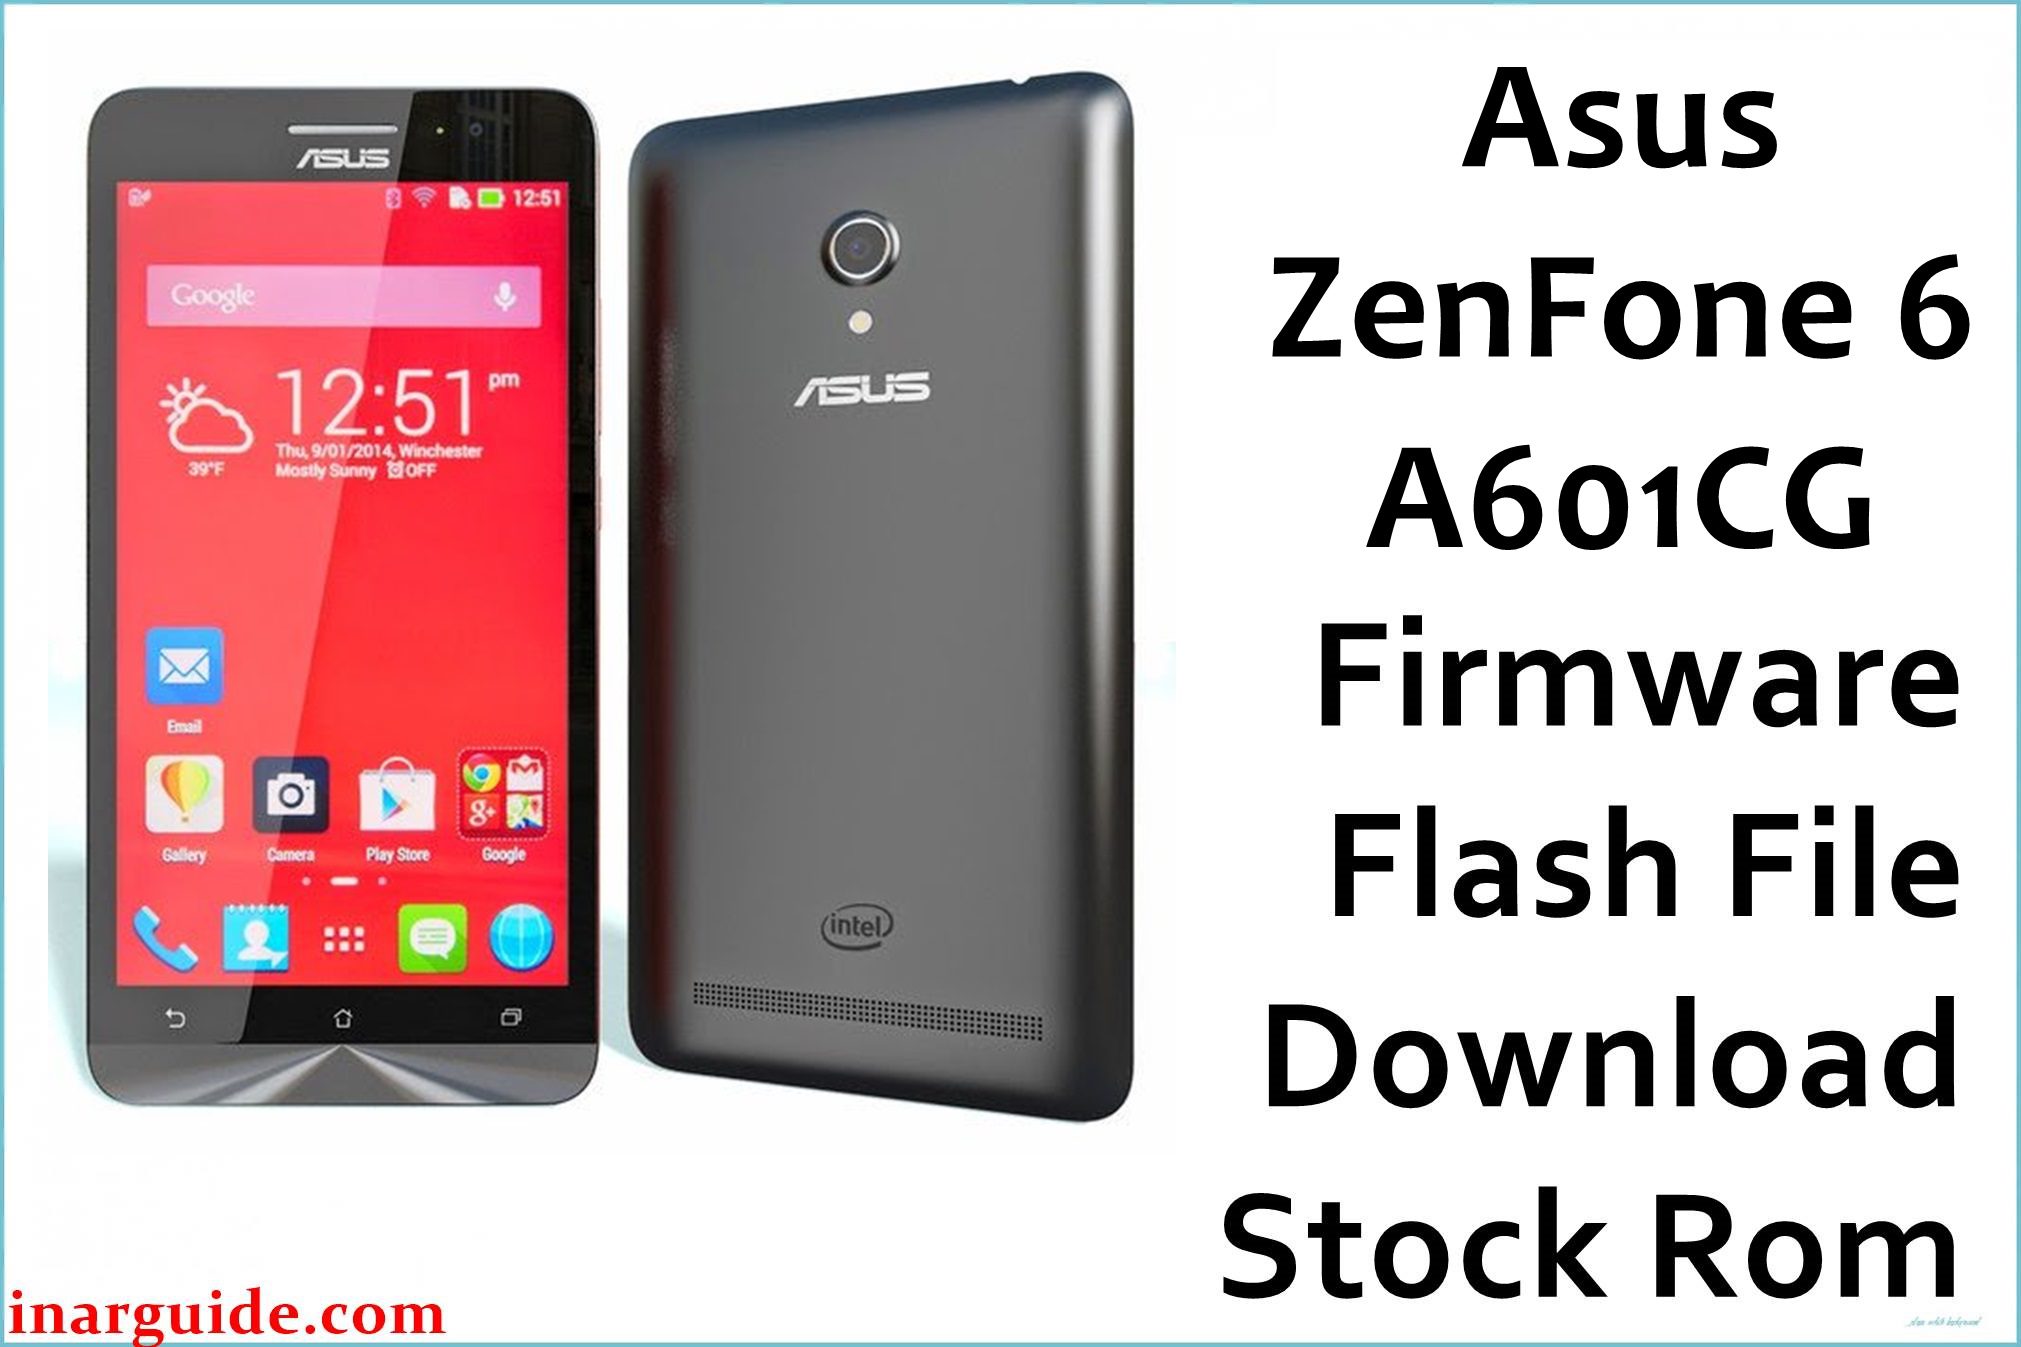 Asus ZenFone 6 A601CG